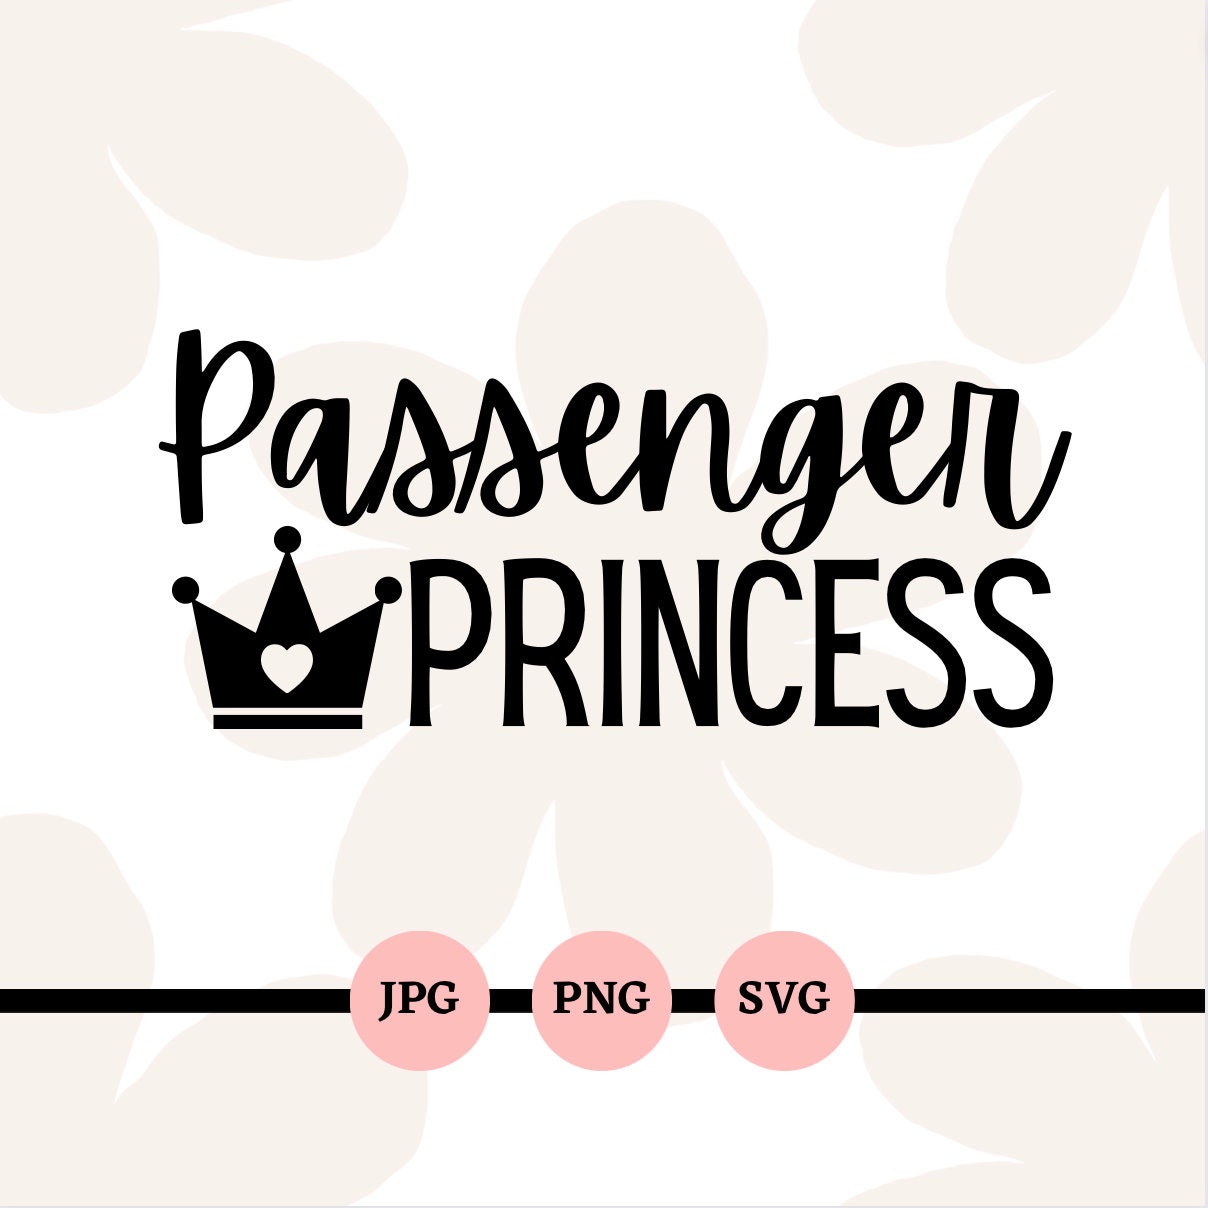 Passenger princesses where yall at! 🙋🏿‍♀️👑 • • 🎥: @NandJBailey 💕